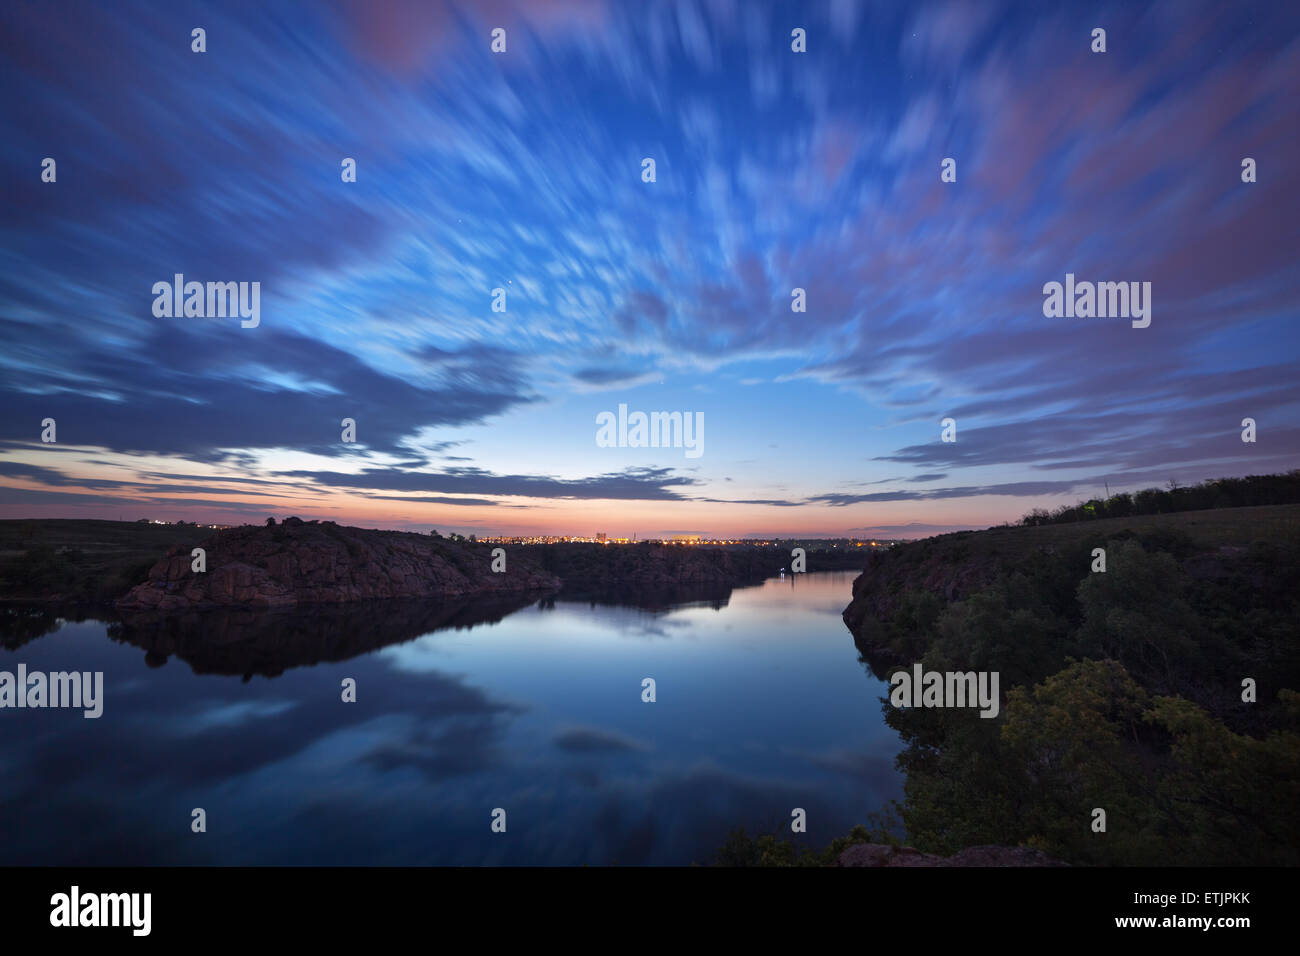 Splendido cielo notturno presso il fiume con le stelle, nuvole e riflessi nell'acqua. Estate in Ucraina Foto Stock